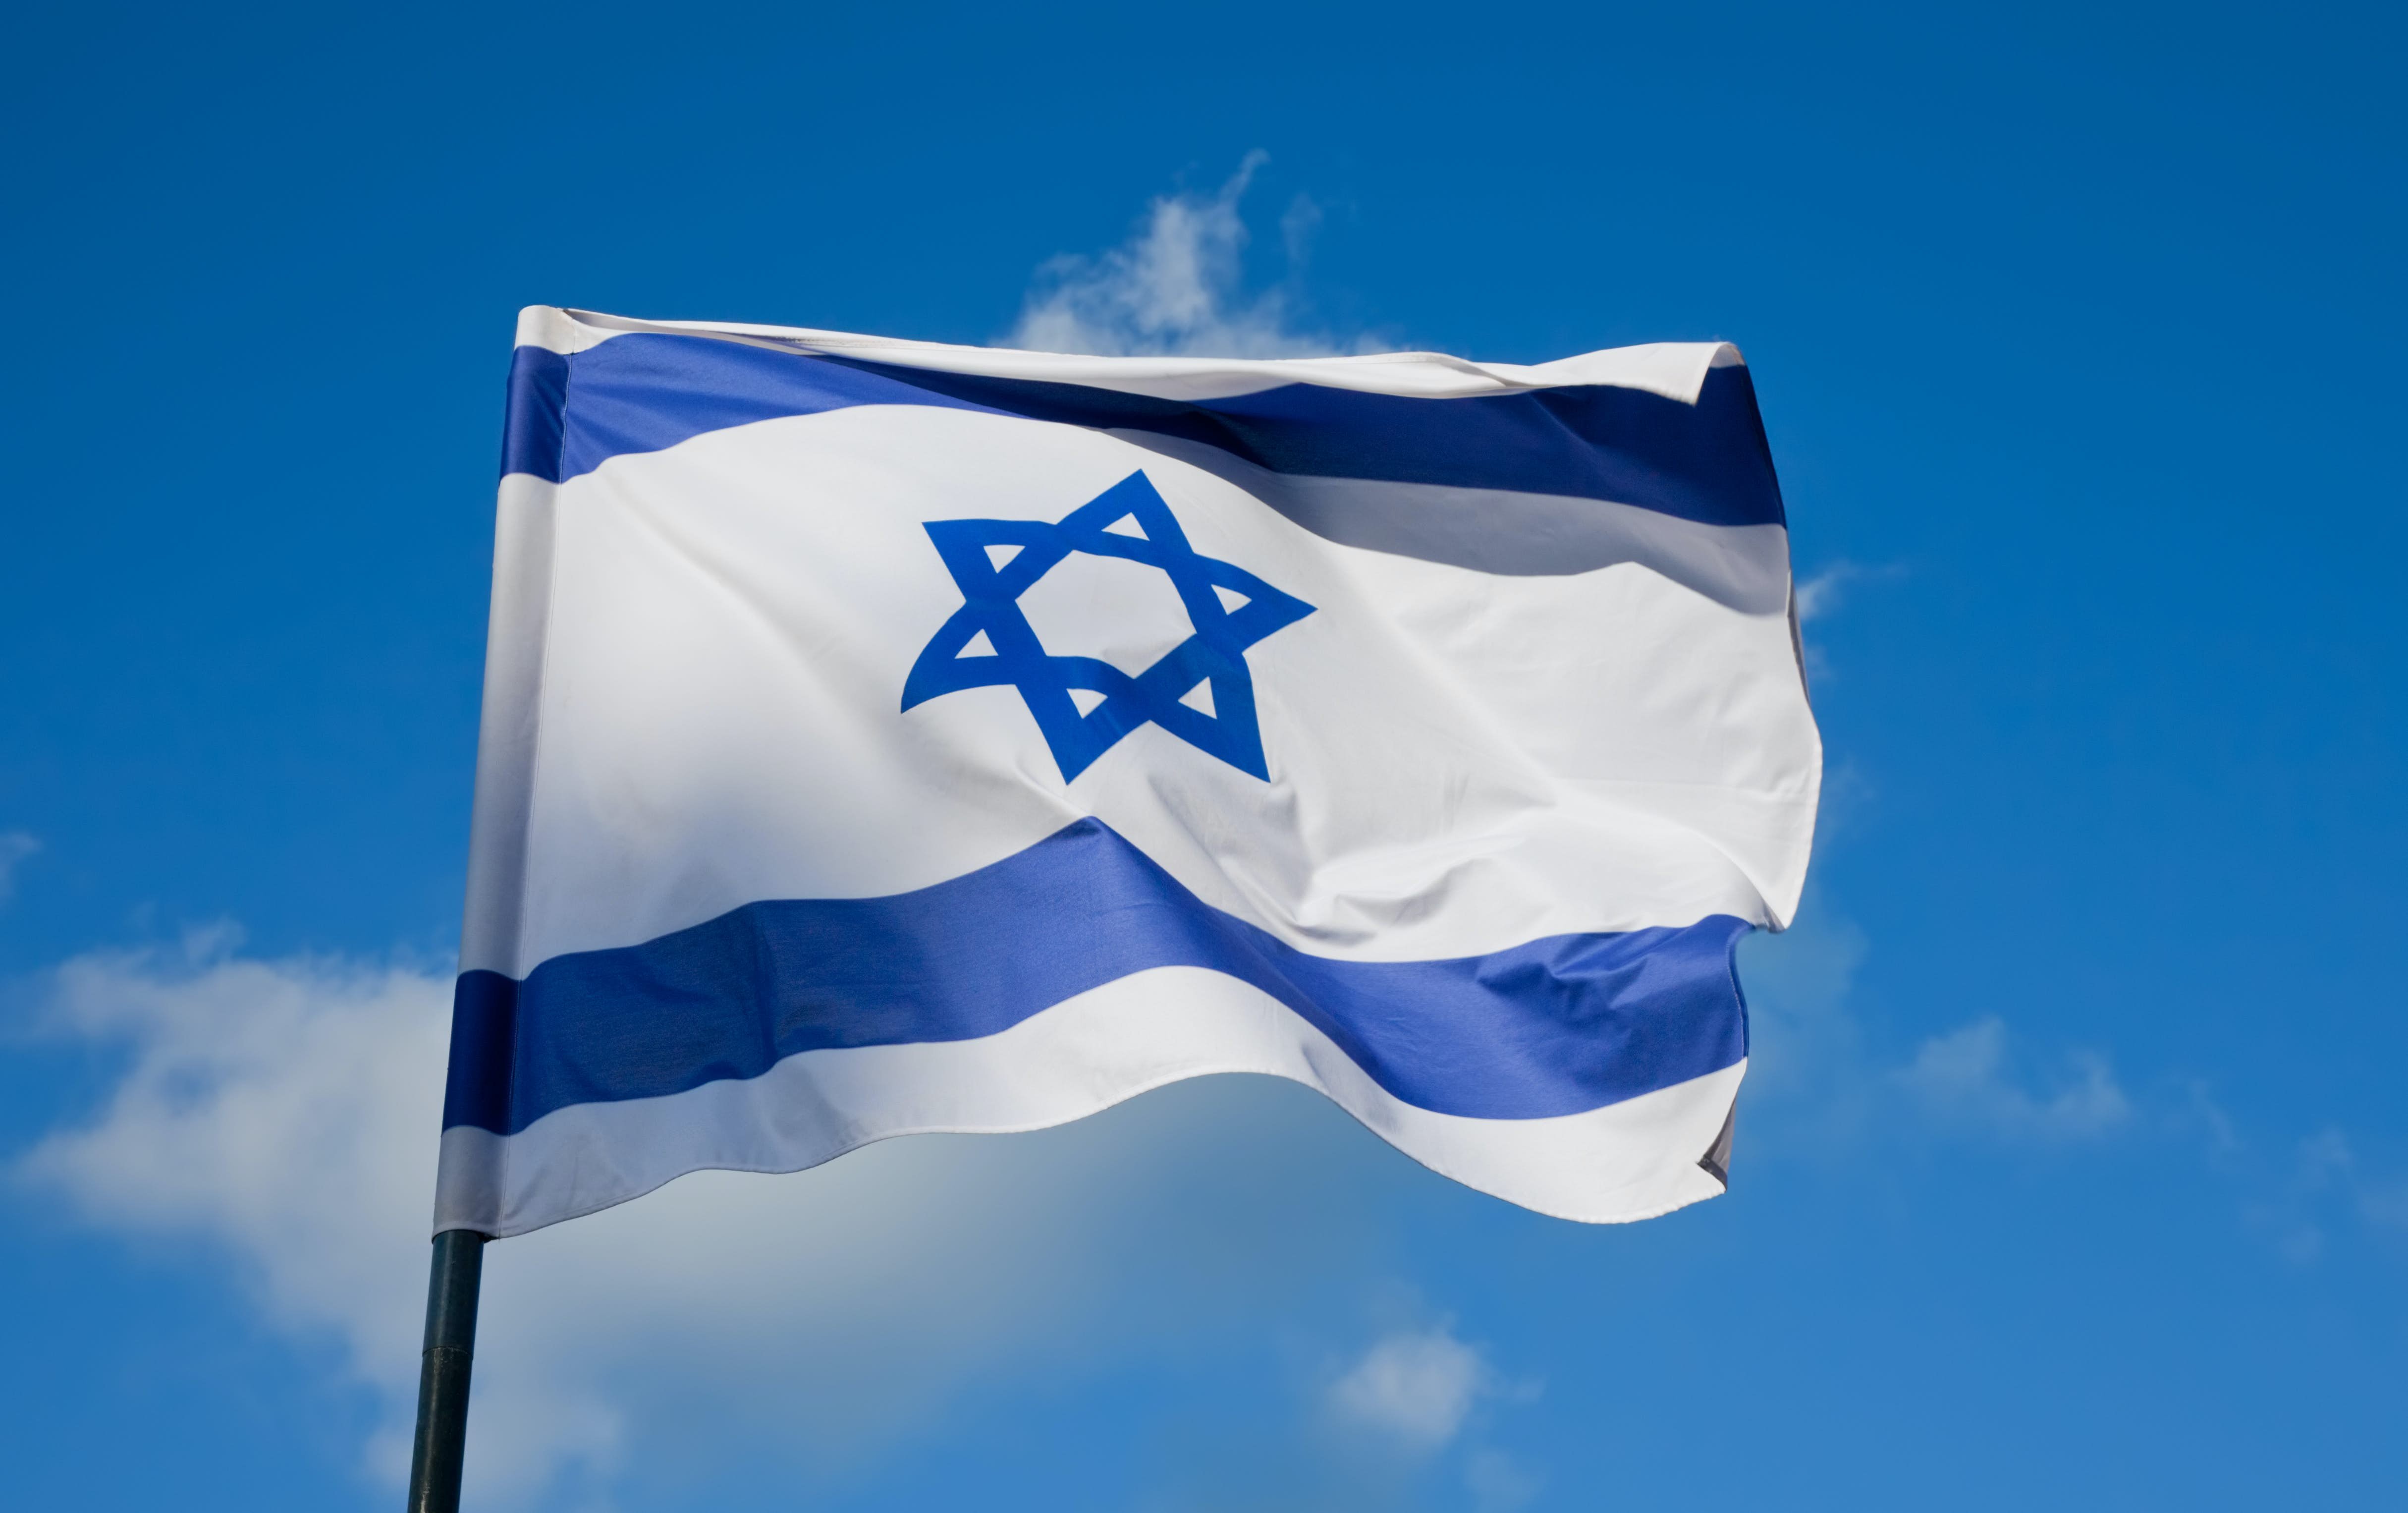 Ізраїль збільшить допомогу Україні, обговорюються варіанти військових поставок, - Haaretz